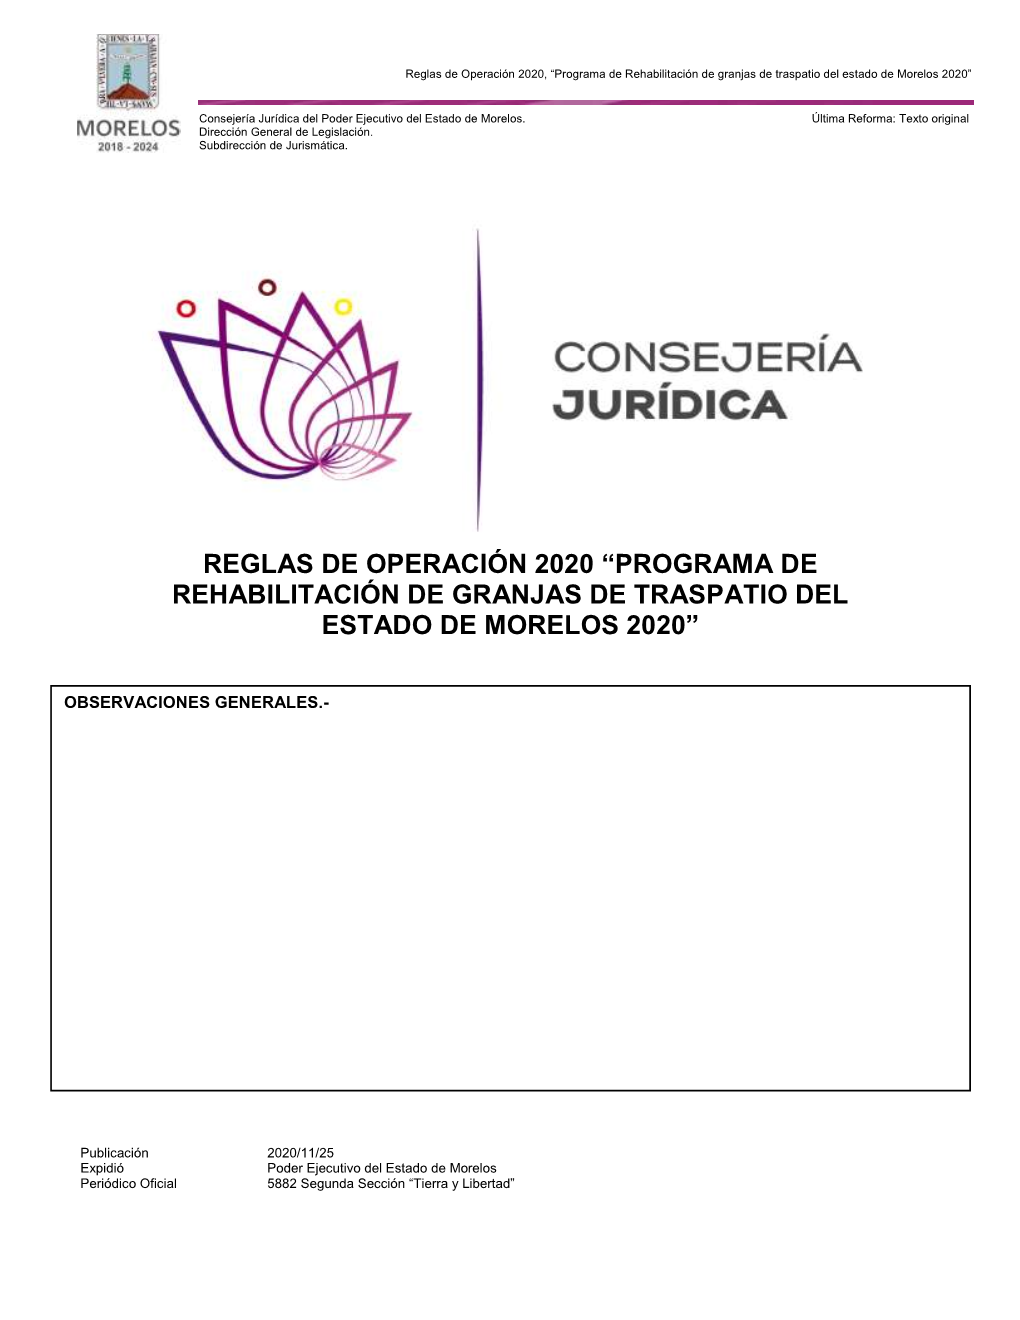 Programa De Rehabilitación De Granjas De Traspatio Del Estado De Morelos 2020”